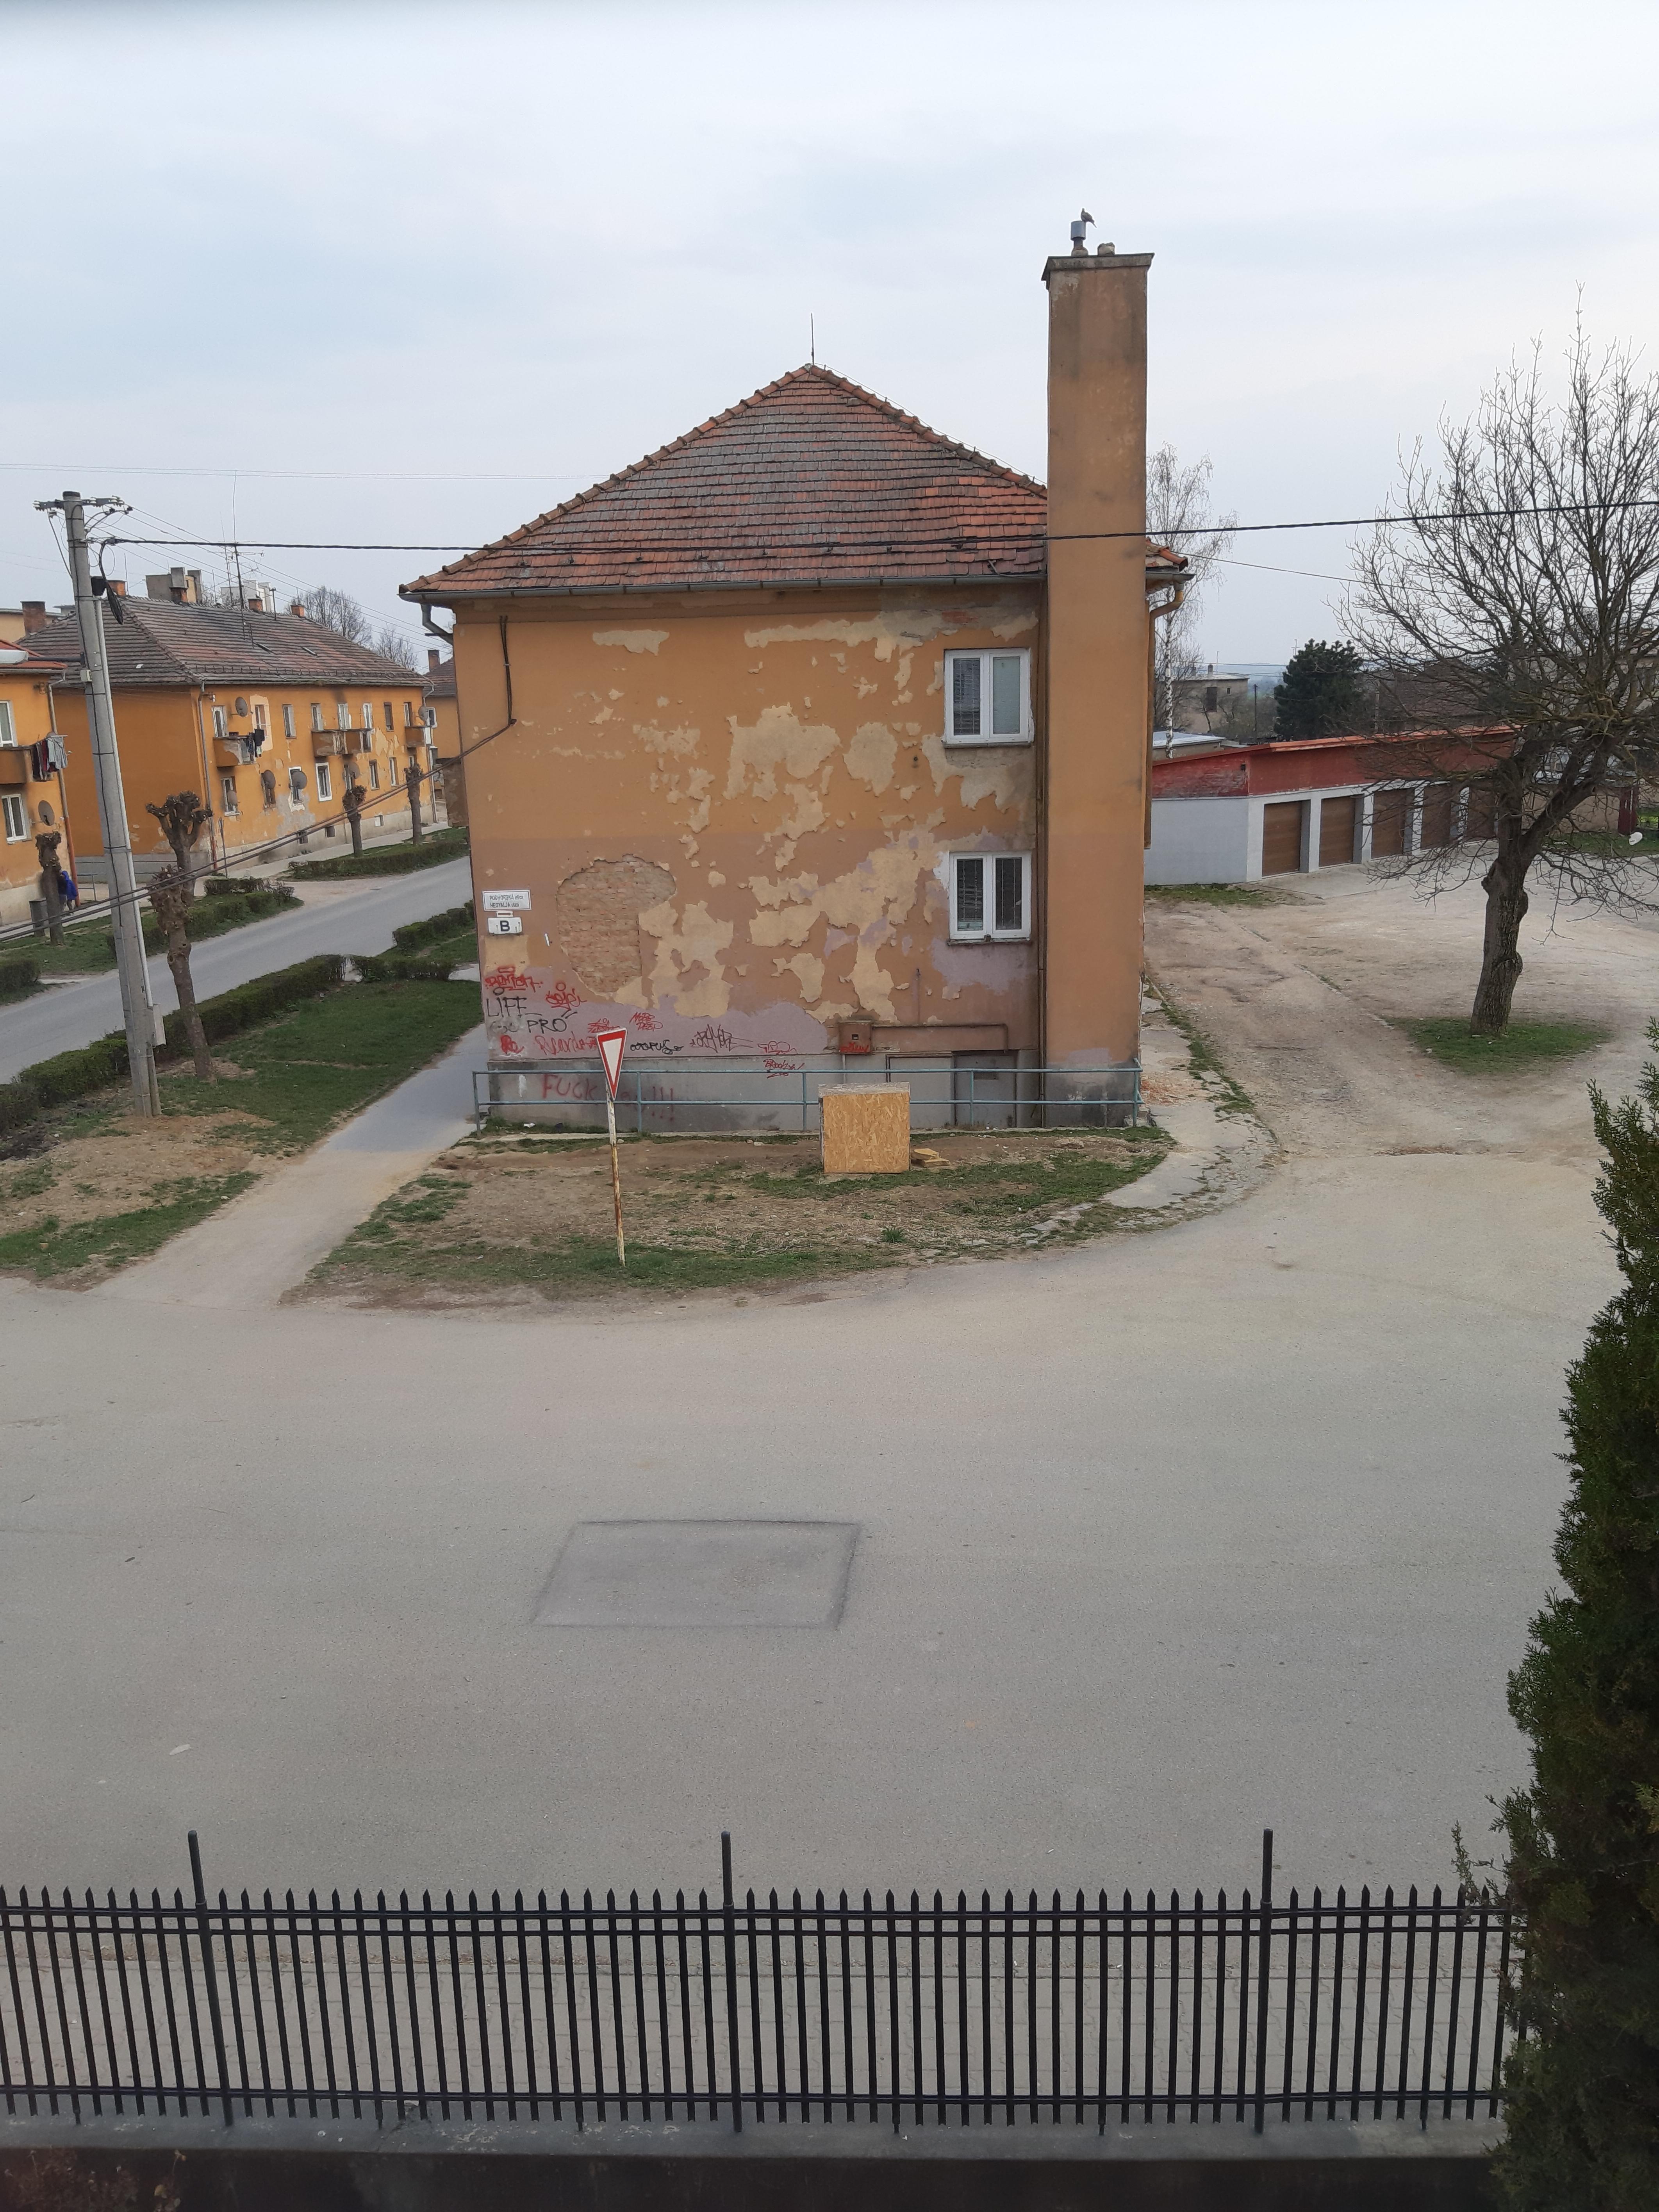 Podhorská-stavby a budovy-opustená budova, , Moldava n. Bodvou |  Odkazprestarostu.sk